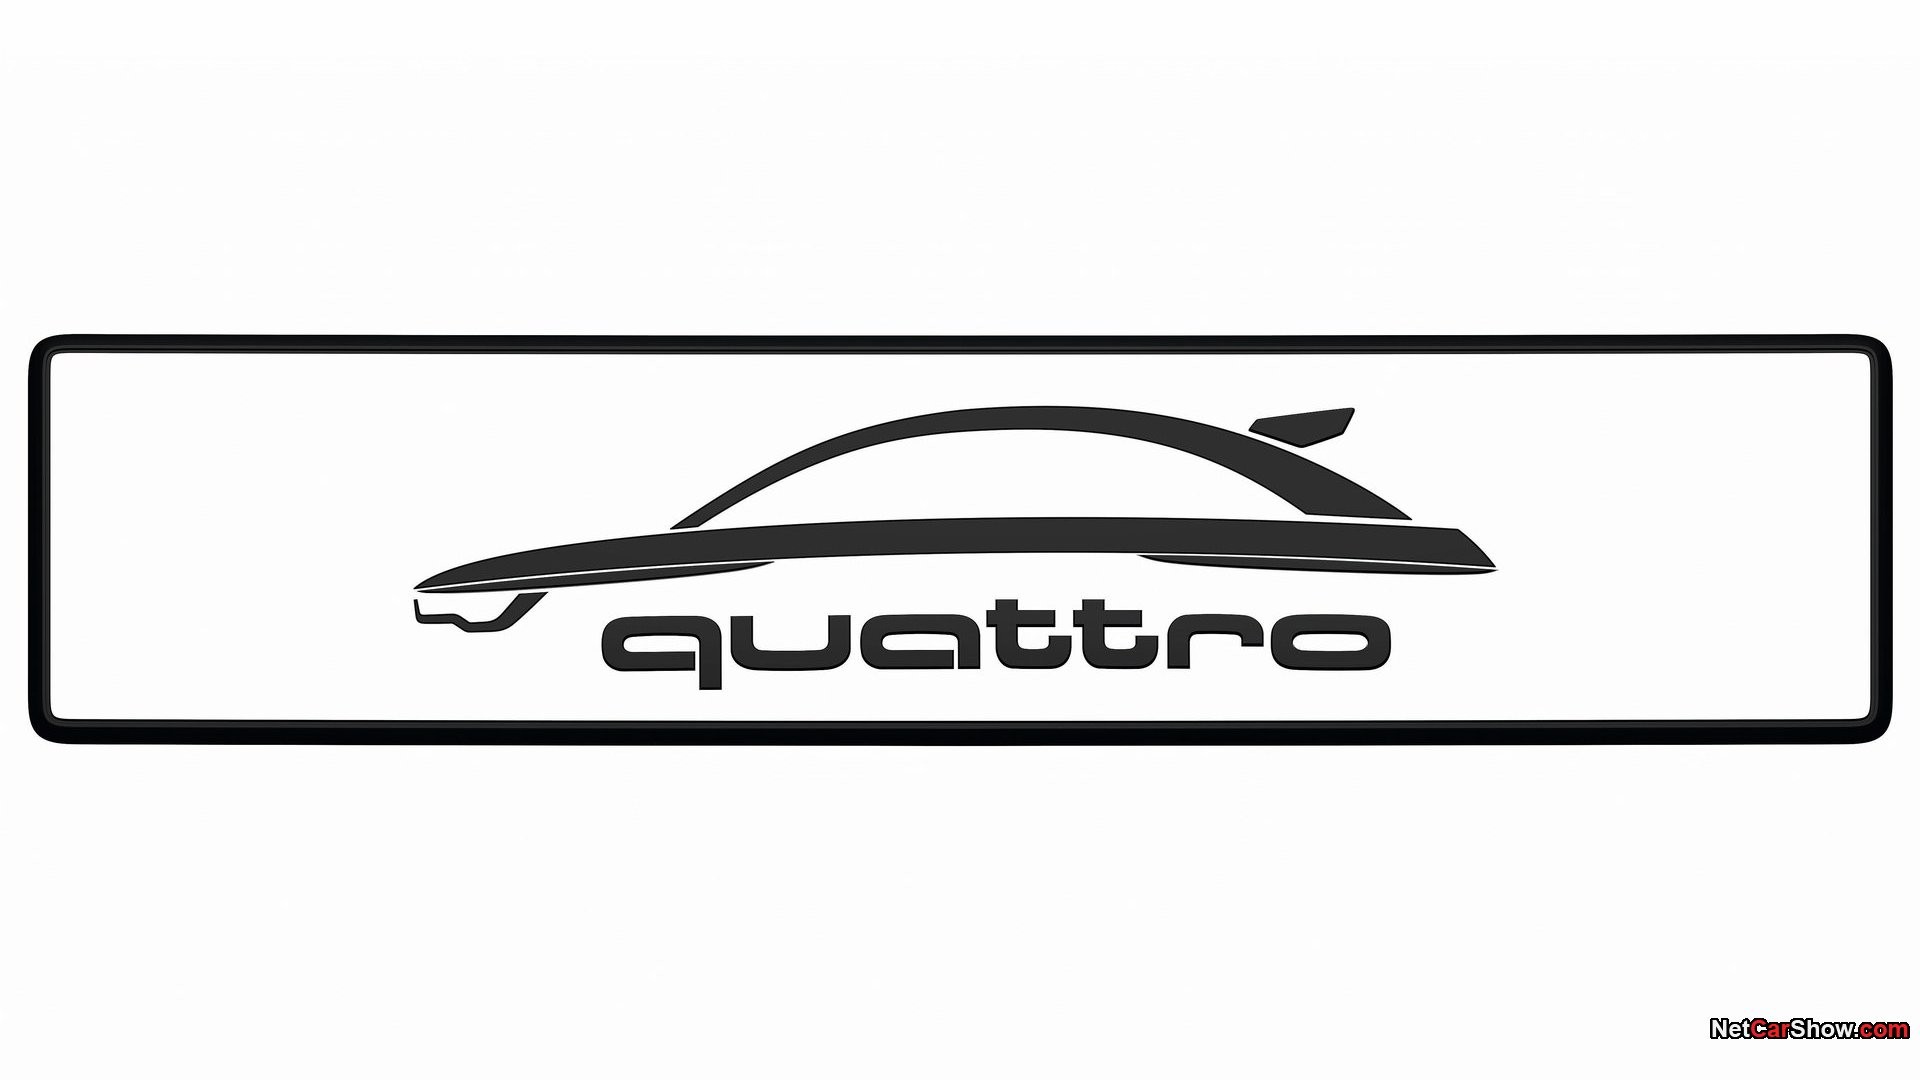 автомобили, Ауди, транспортные средства, Audi A1, логотипы, Quattro - обои на рабочий стол